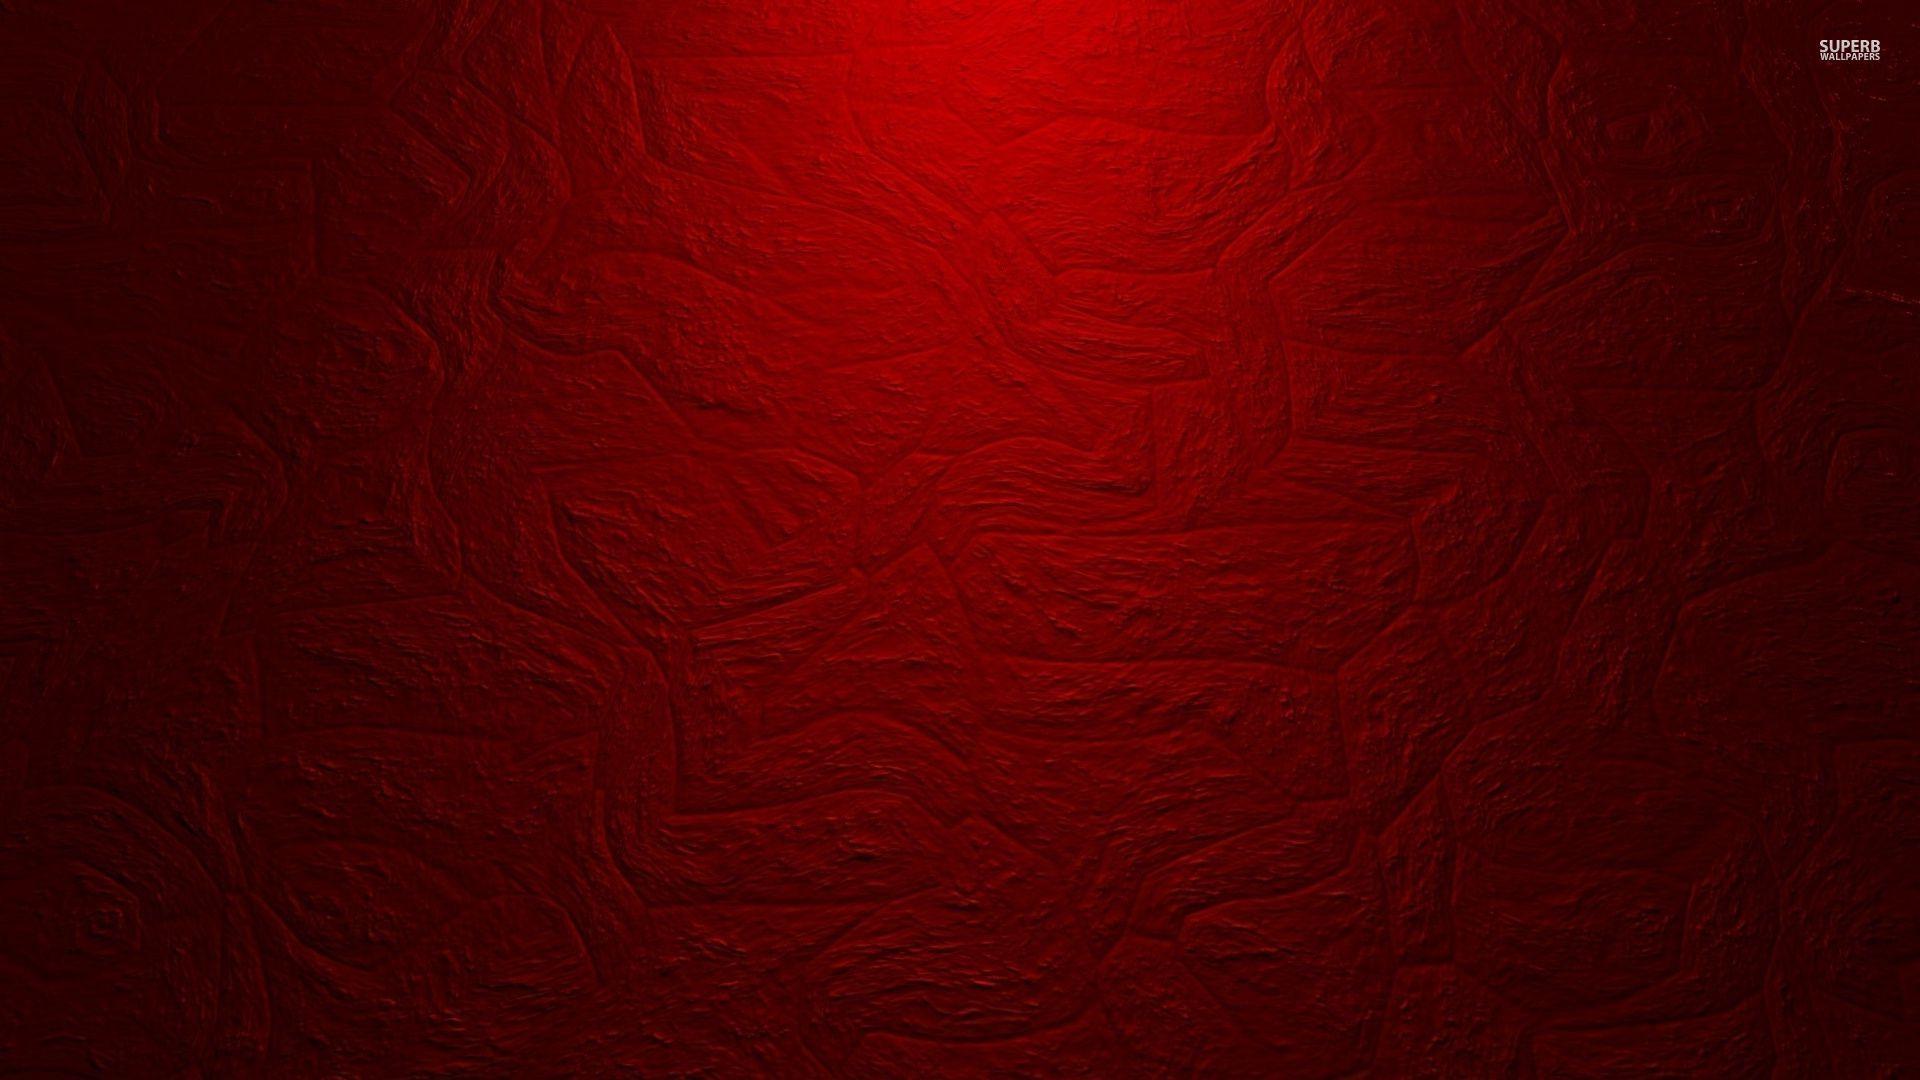 Các hình nền vải đỏ sẽ mang đến cho bạn sự ấm áp và độc đáo cho màn hình của bạn. Vải đỏ có một sự độc đáo riêng, nó cũng làm cho hình nền của bạn đặc biệt hơn bao giờ hết. Với chất lượng hình ảnh HD, những chiếc điện thoại sẽ trở nên hoàn hảo hơn.